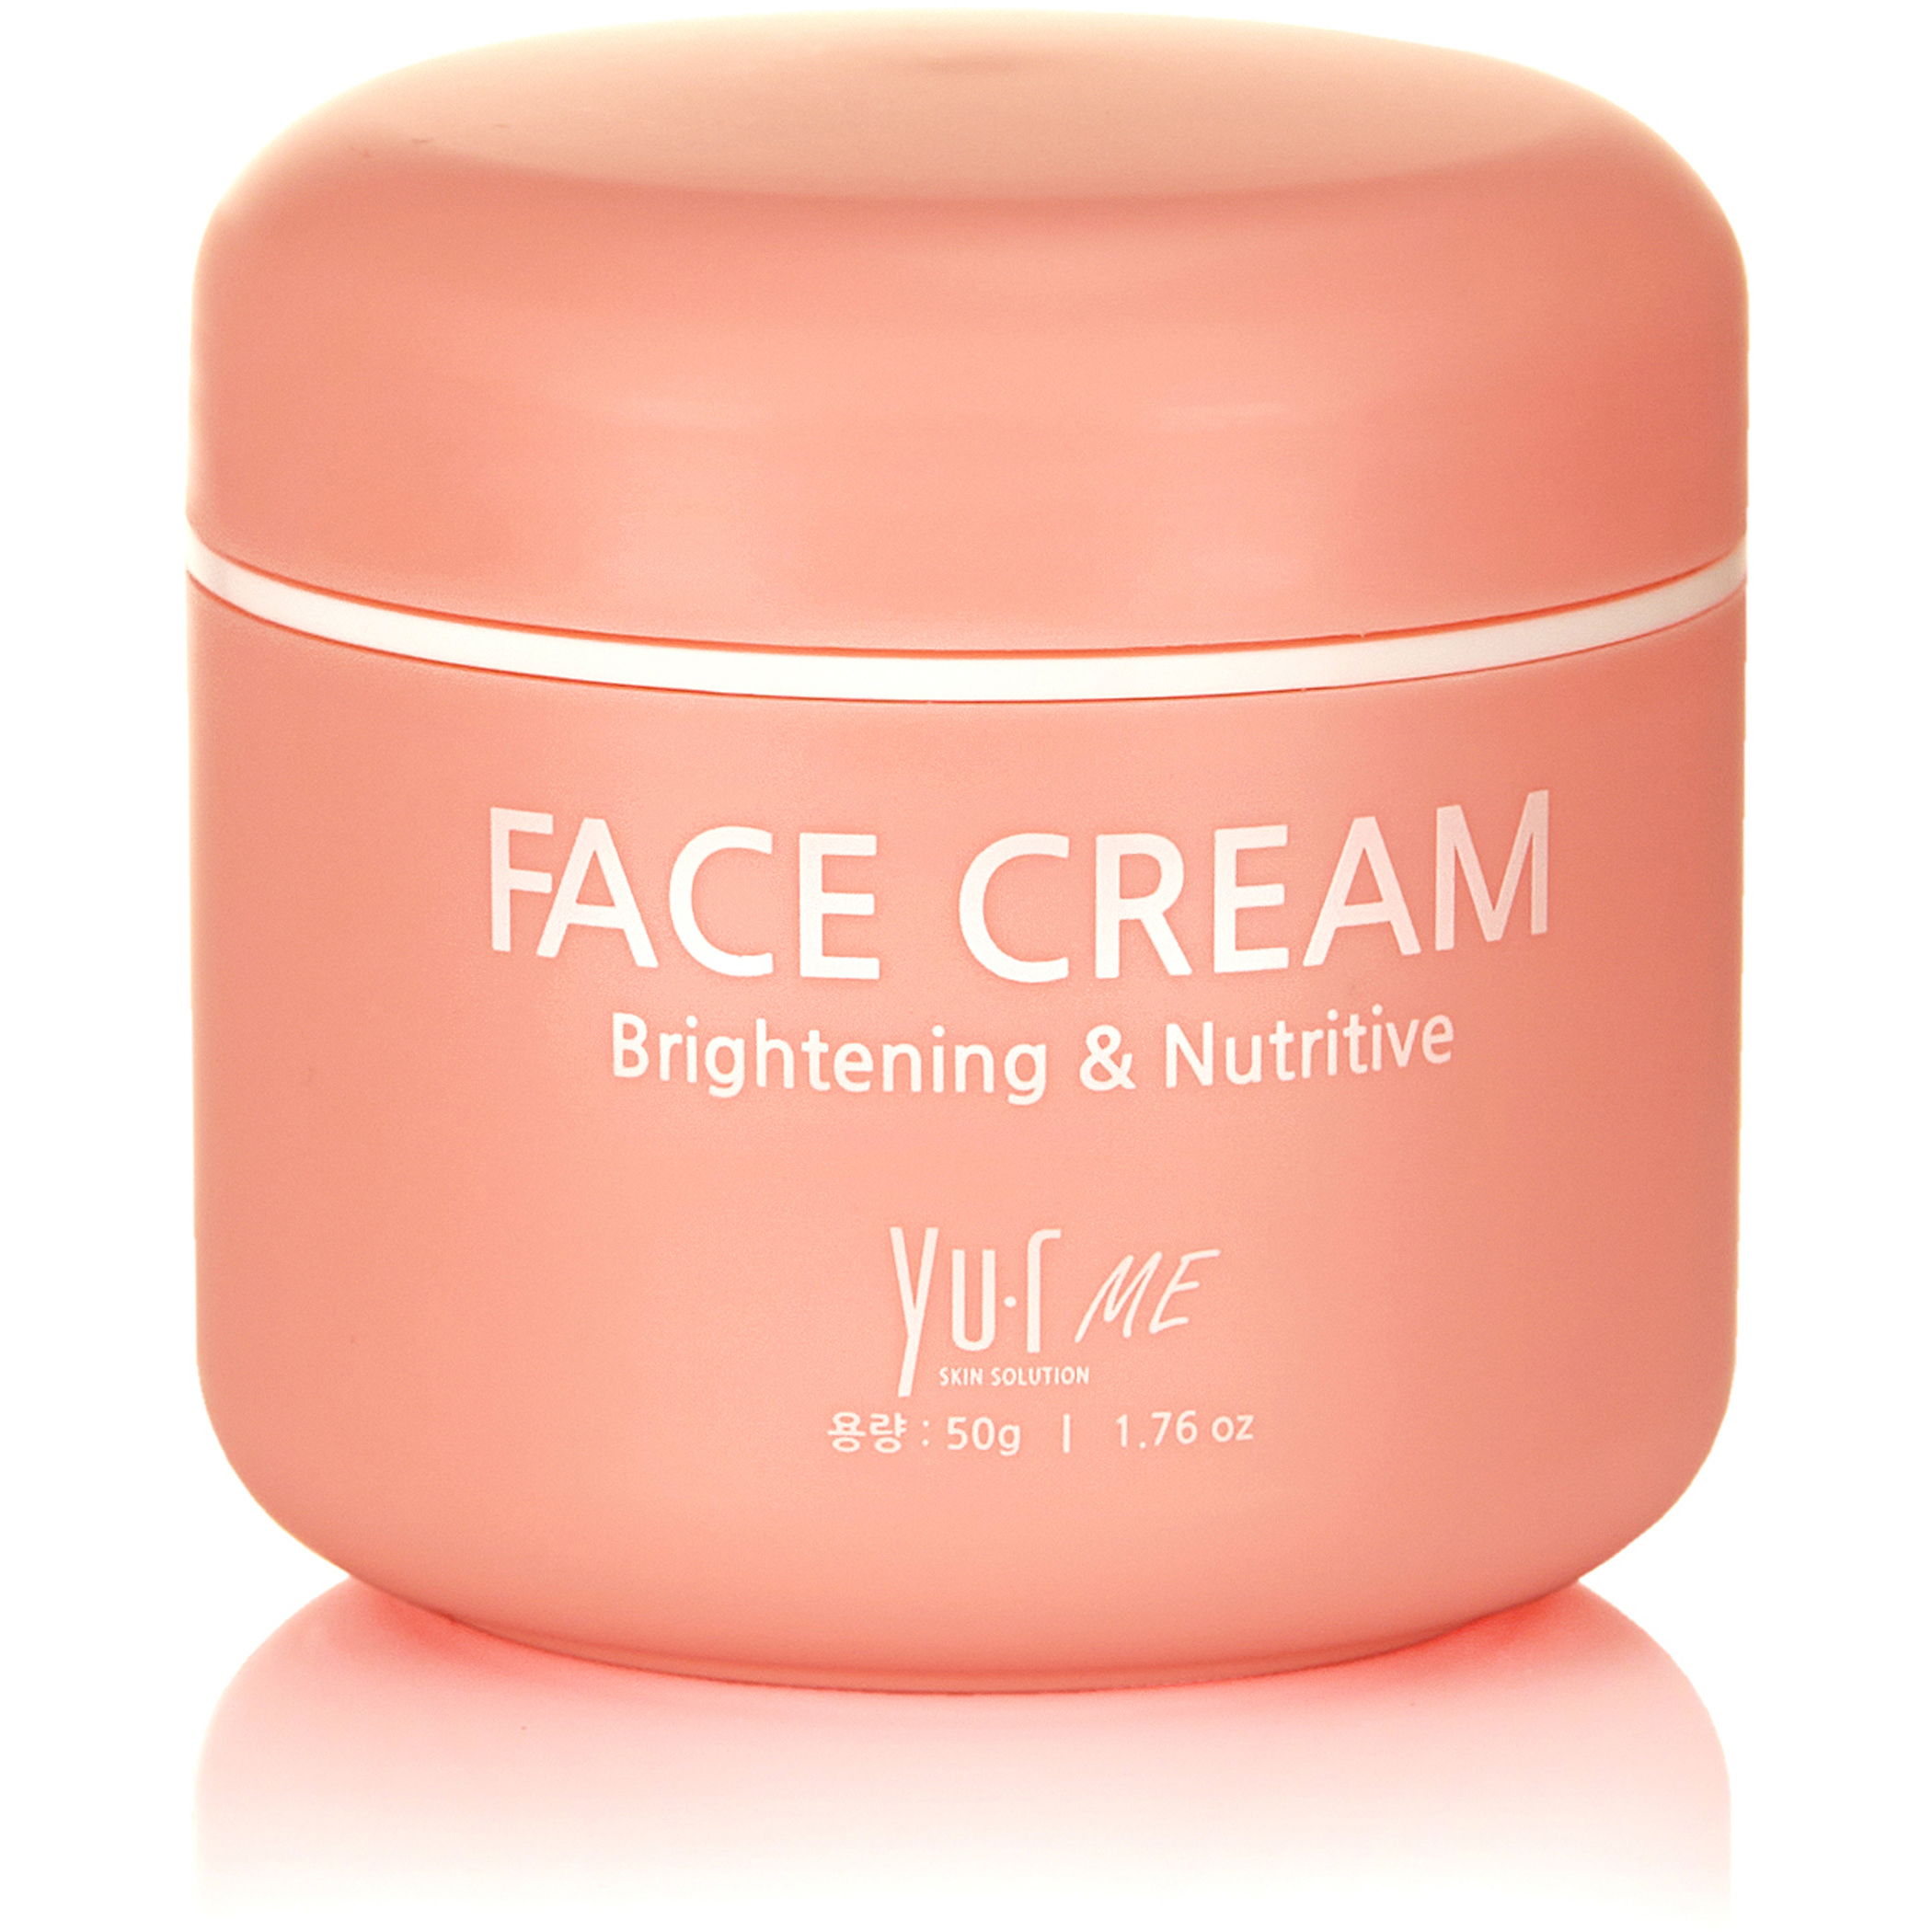 Купить Крем для лица Yu.R Me Face Cream, 50 гр